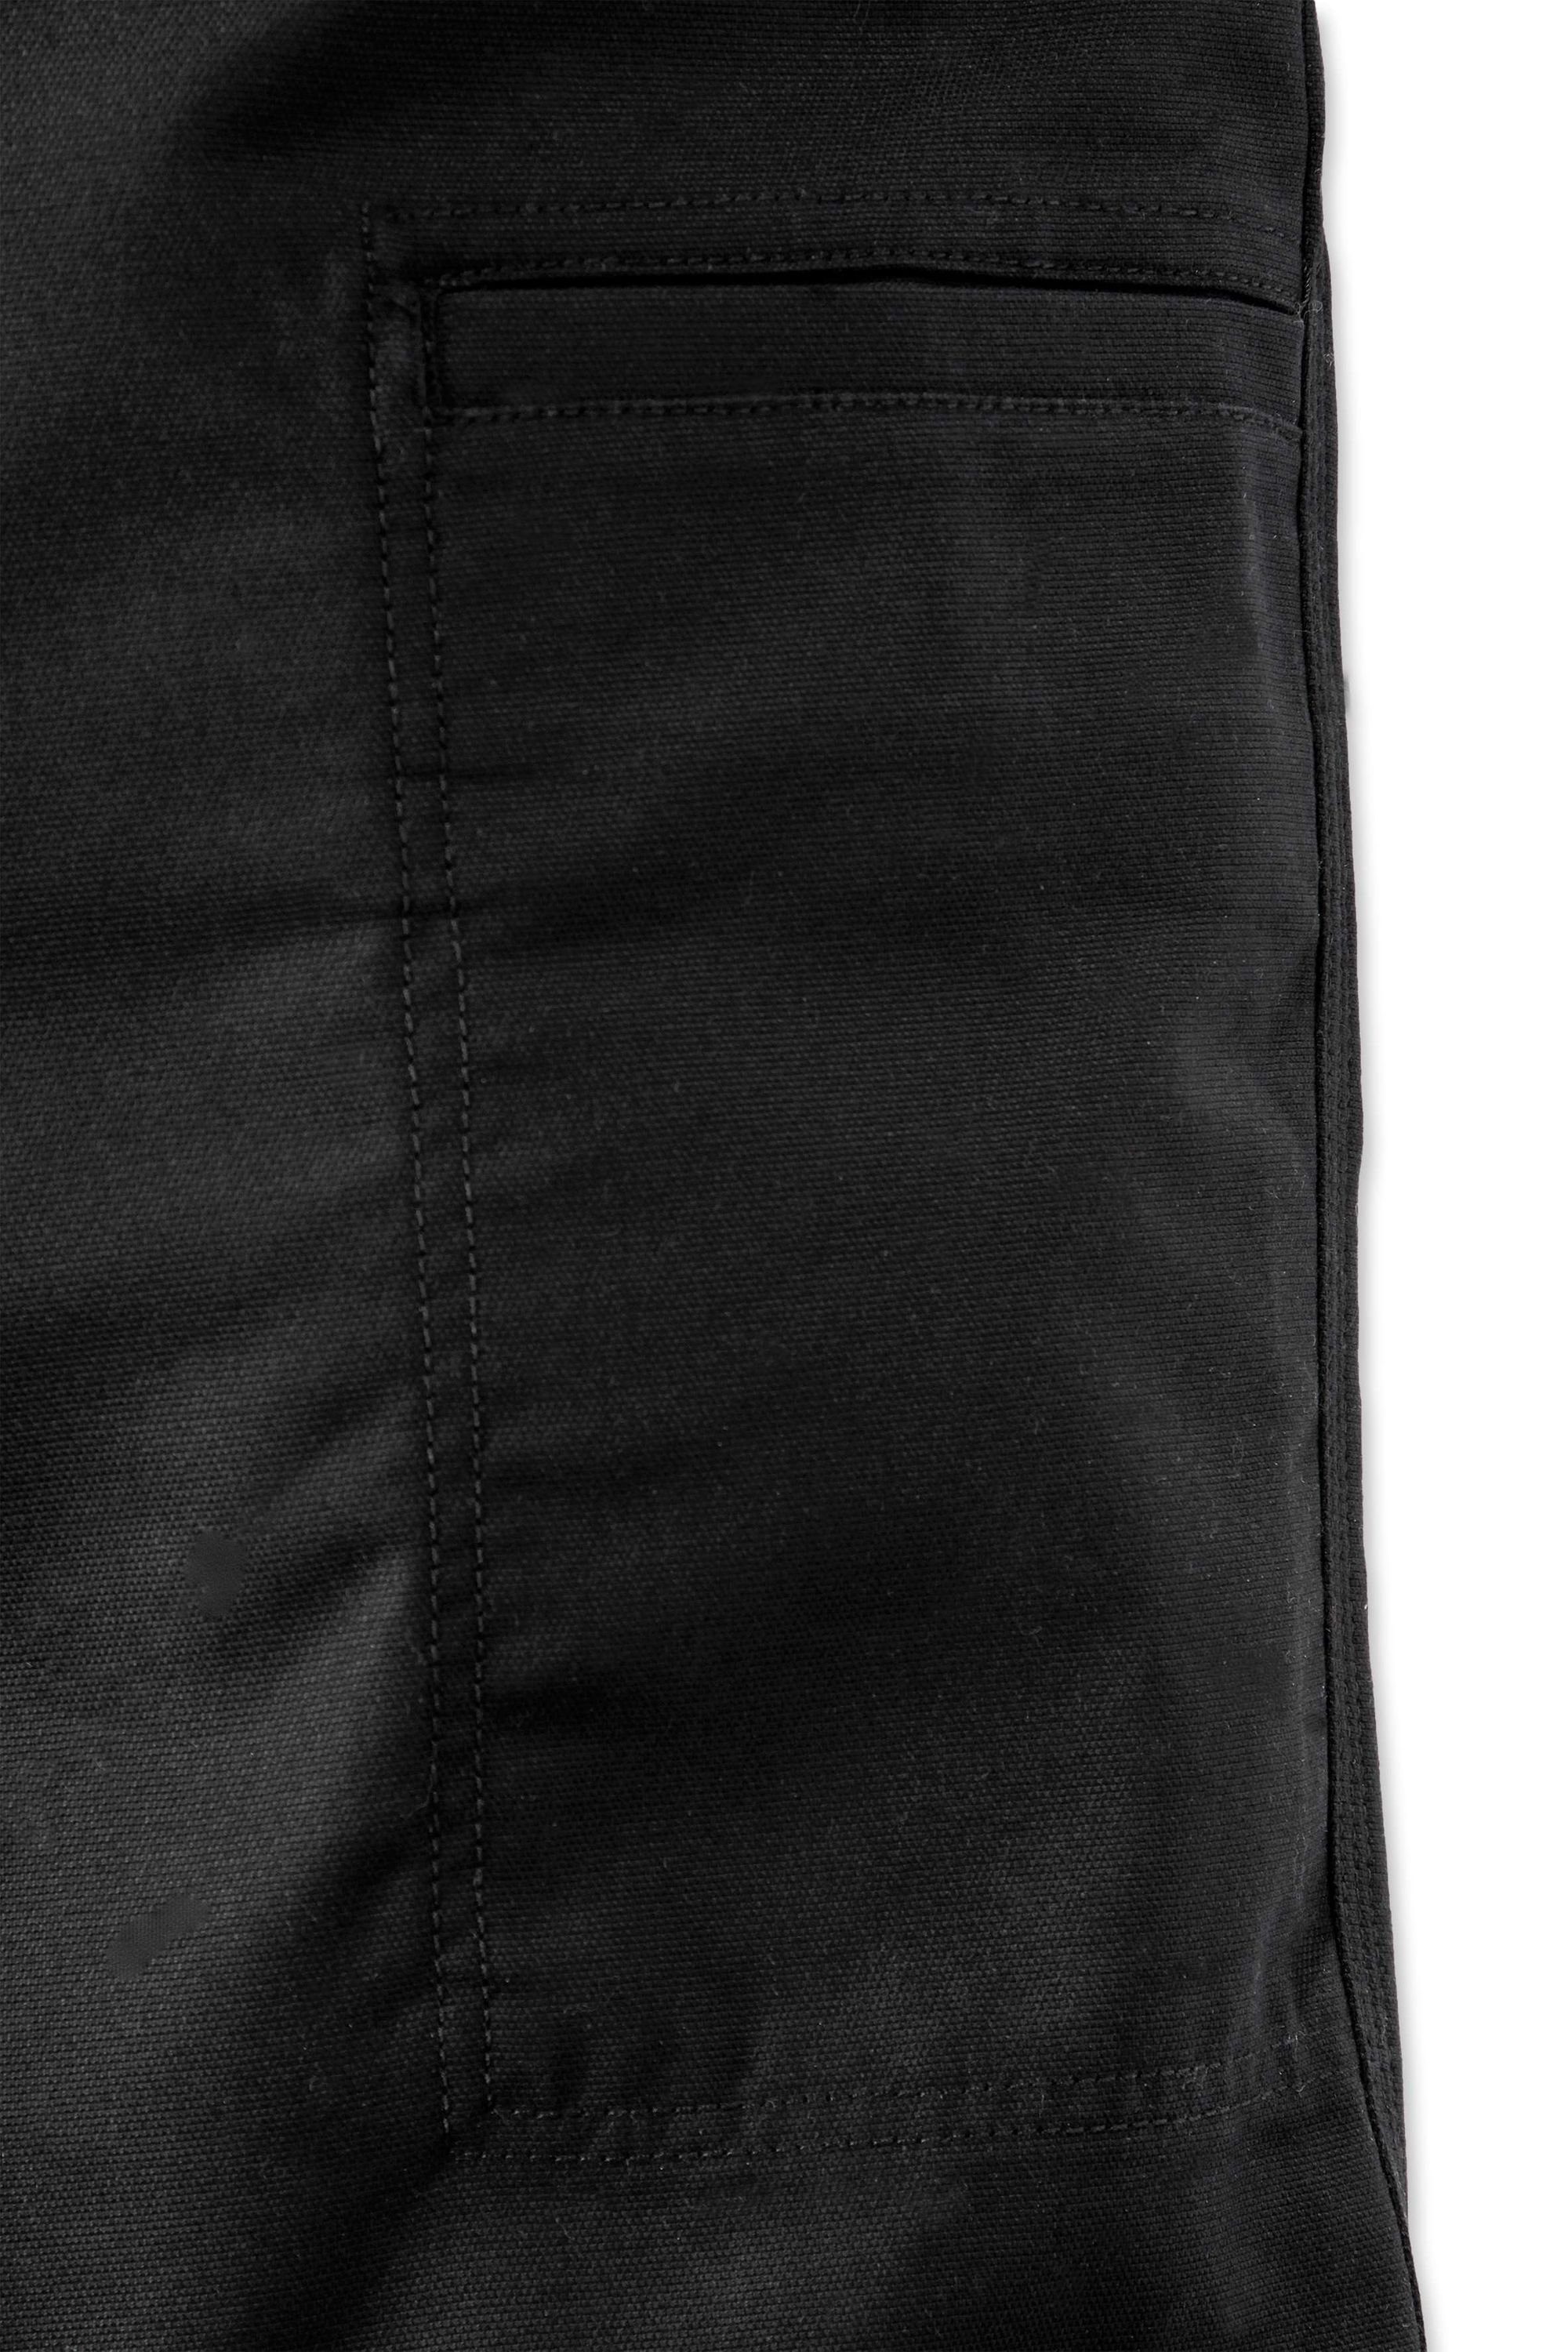 Arbeitshose black Stretch Canvas Rugged (1-tlg) Carhartt Pant